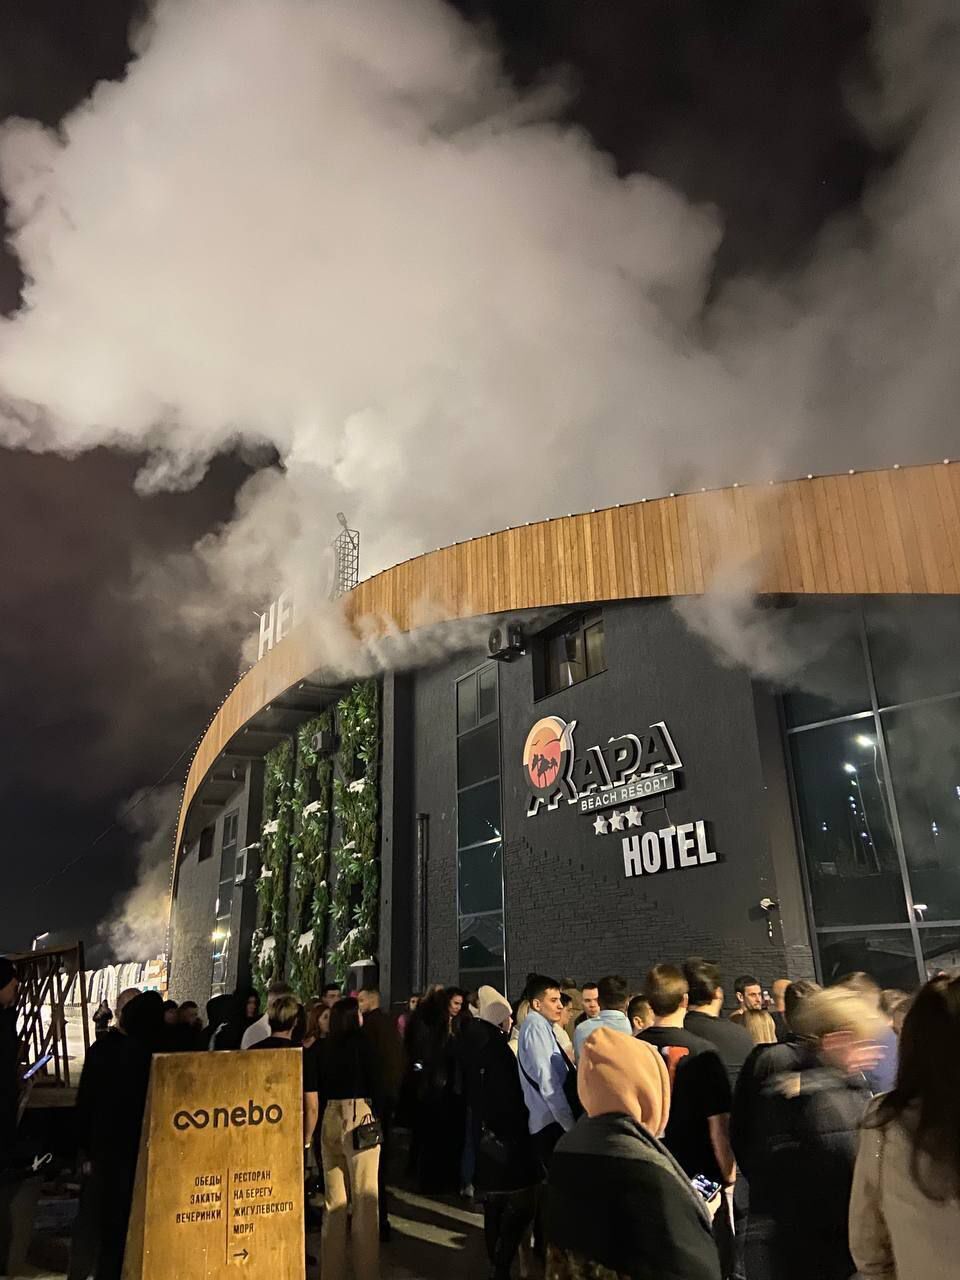 В российском Тольятти загорелся самый большой отель: жителей пришлось эвакуировать. Фото и видео